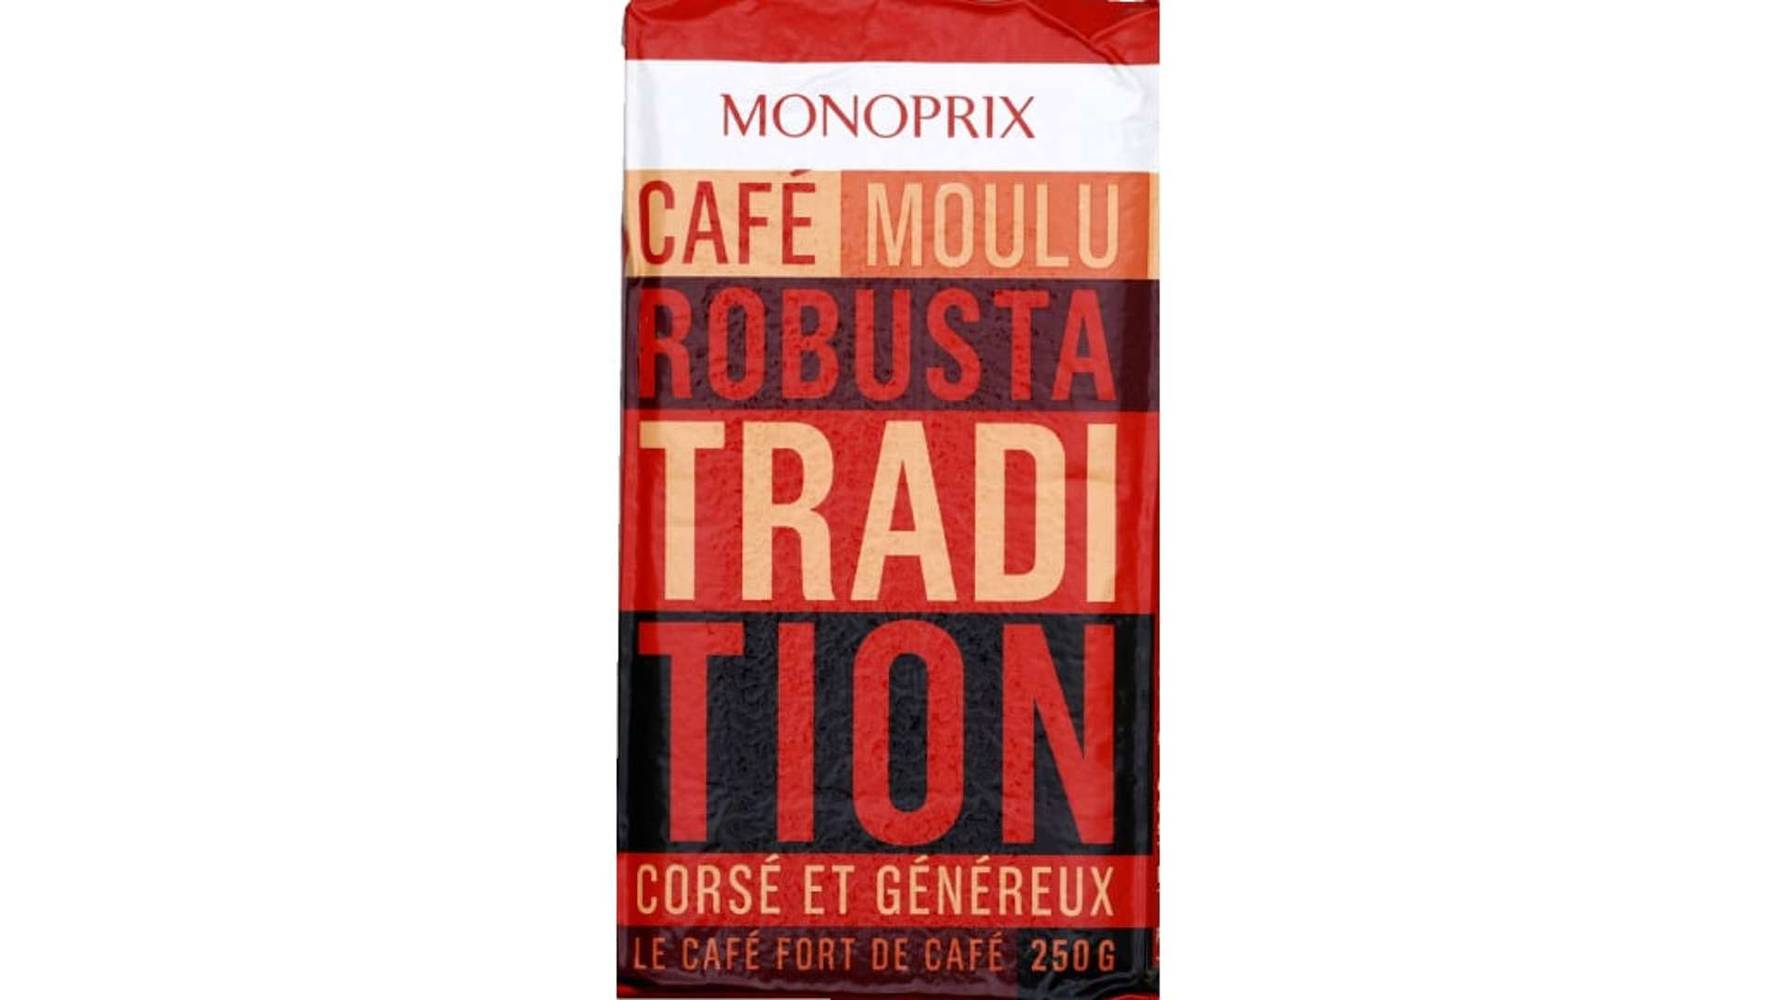 Monoprix Café moulu robusta tradition corsé et généreux Le paquet de 250g